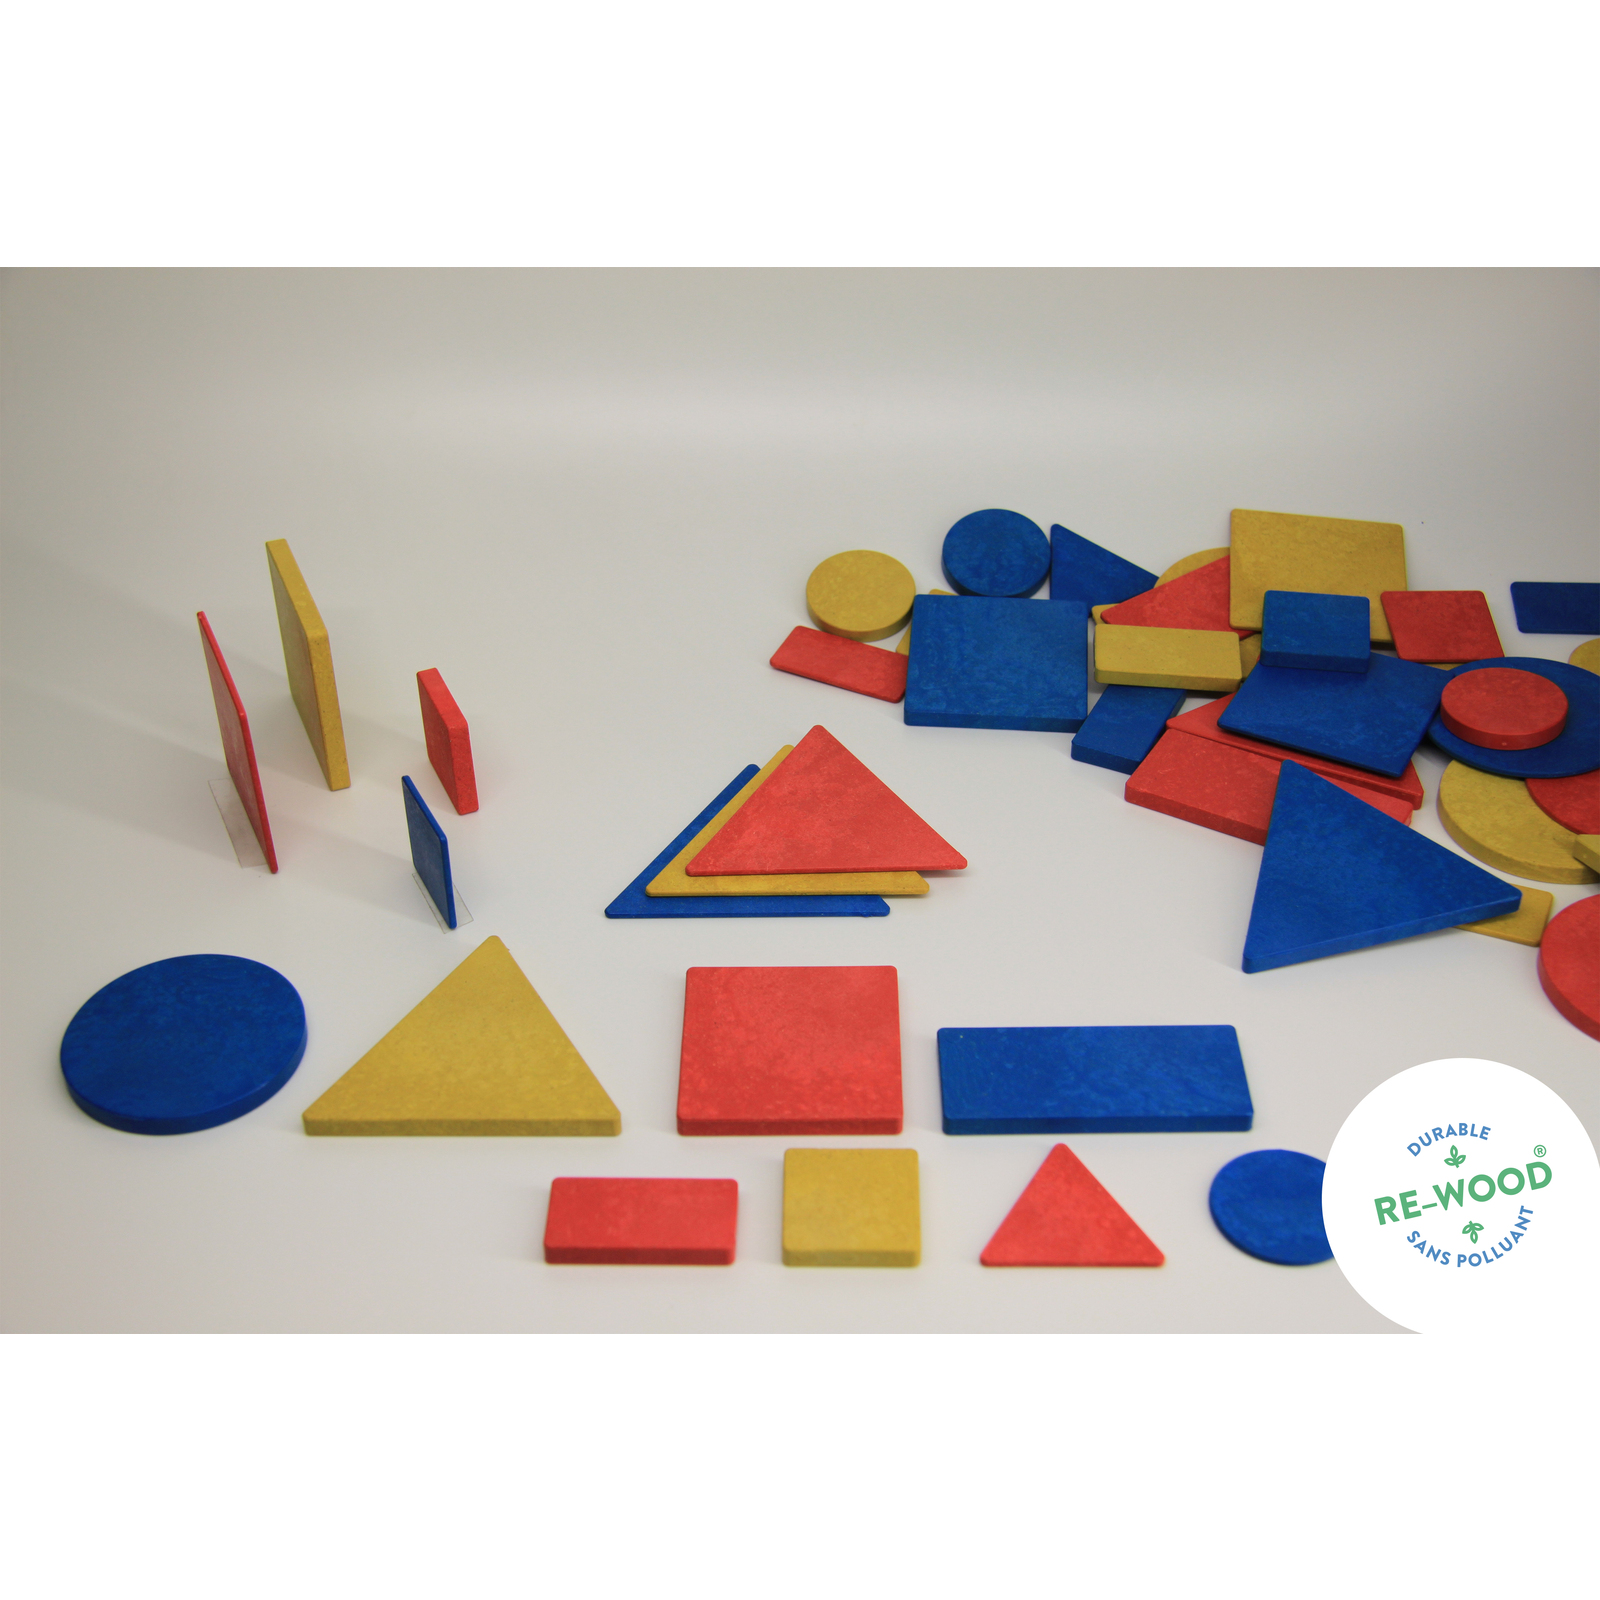 Atelier Géoplans - Pour 2 enfants - Formes, grandeurs, couleurs